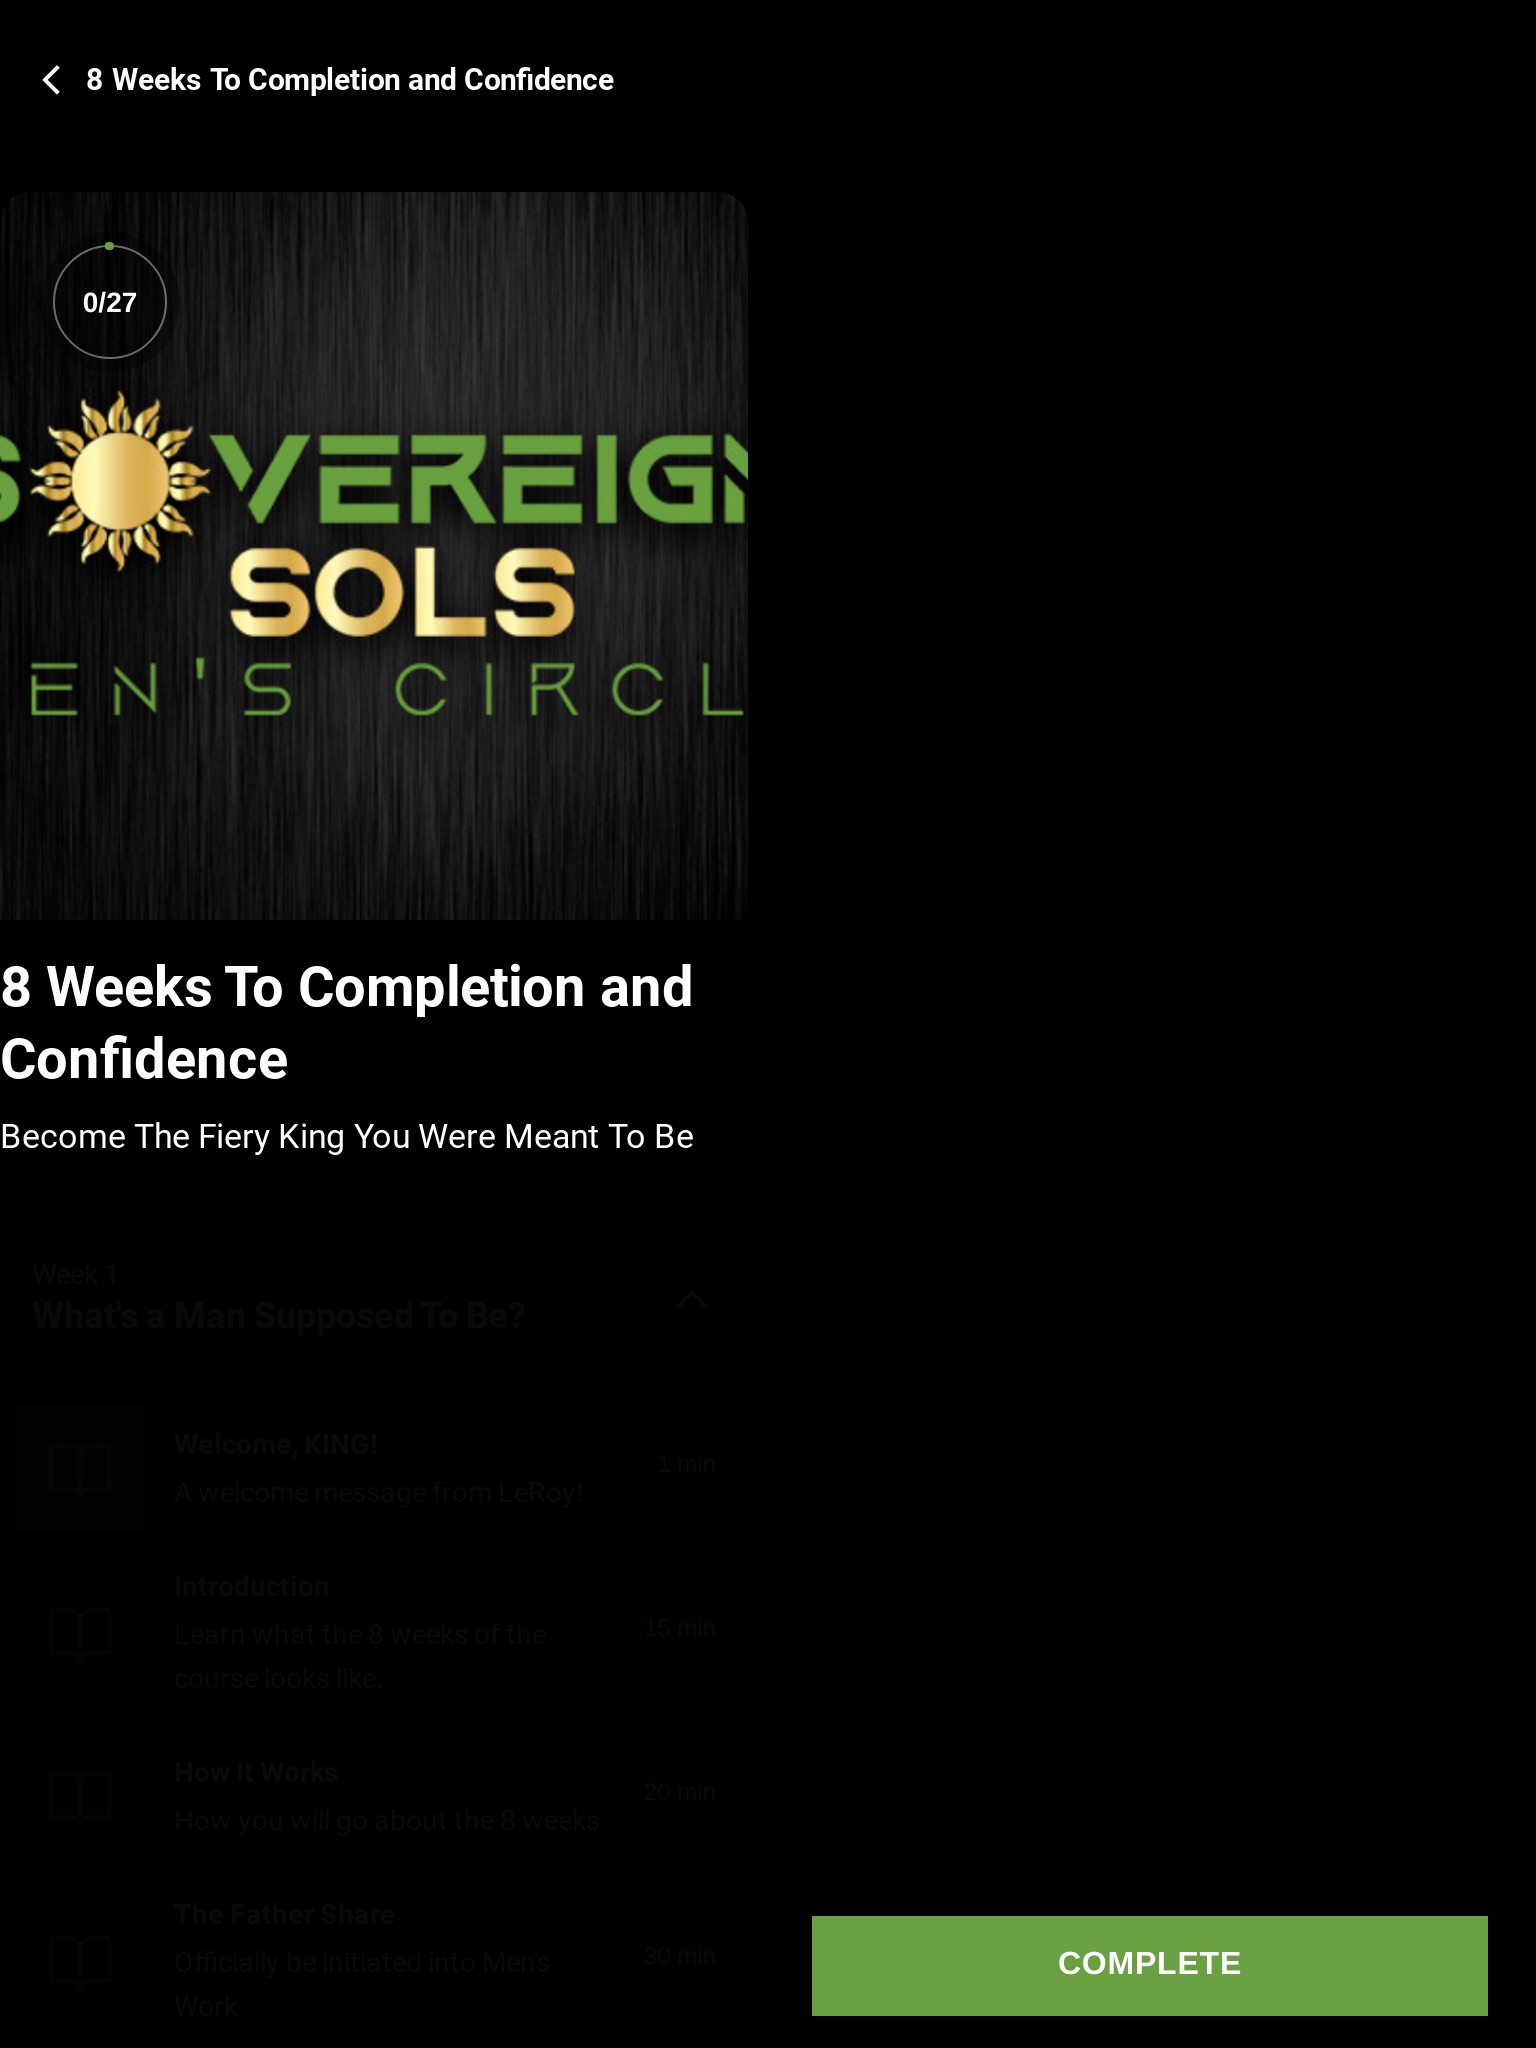 Sovereign Sols Men's Circle screenshot 4